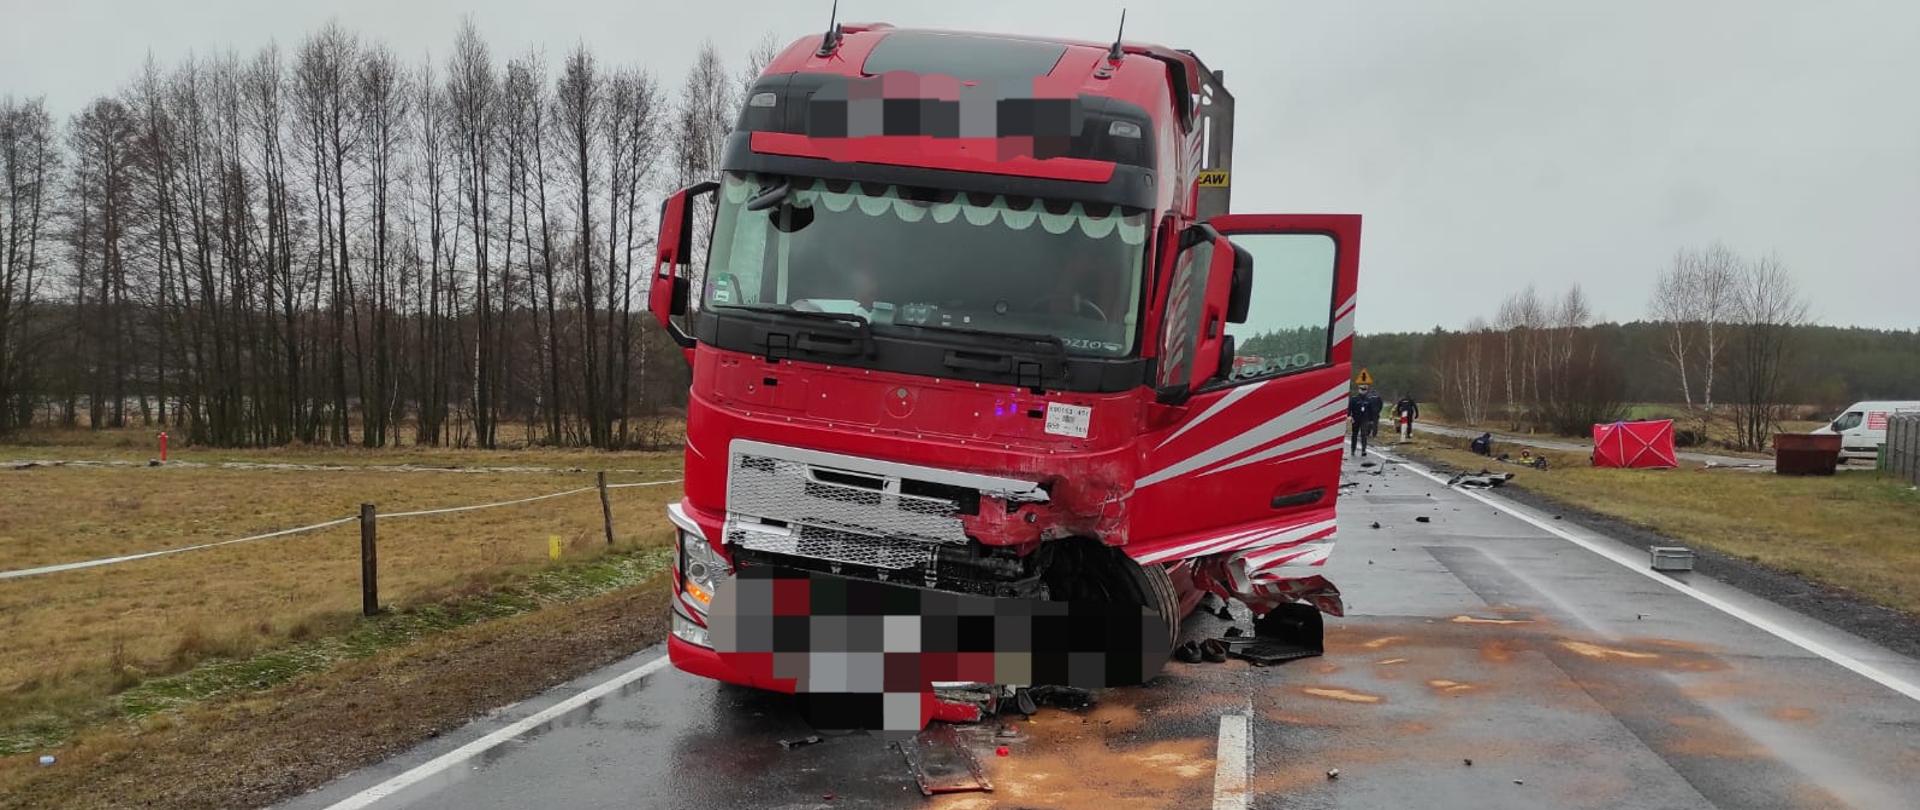 Zdjęcie przedstawia stojący na drodze pojazd ciężarowy z rozbitym przodem, z którego wylały się płyny eksploatacyjne